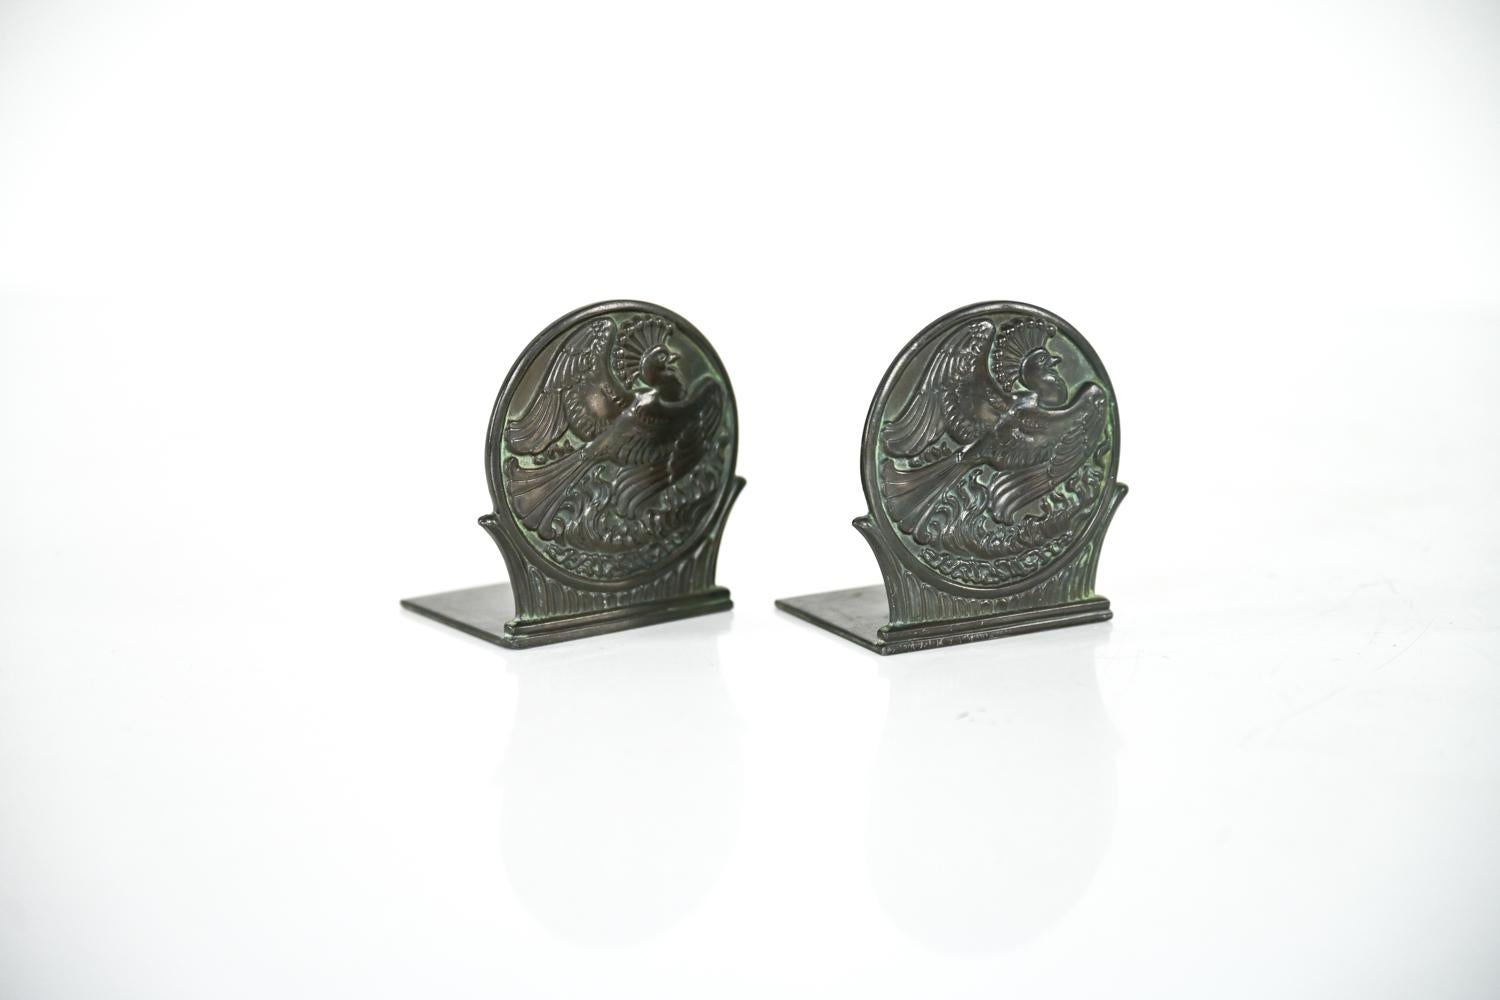 Magnifique paire de serre-livres danois du début du XXe siècle en bronze patiné, conçus par Just Andersen. Ces serre-livres sculpturaux en forme de disque en 